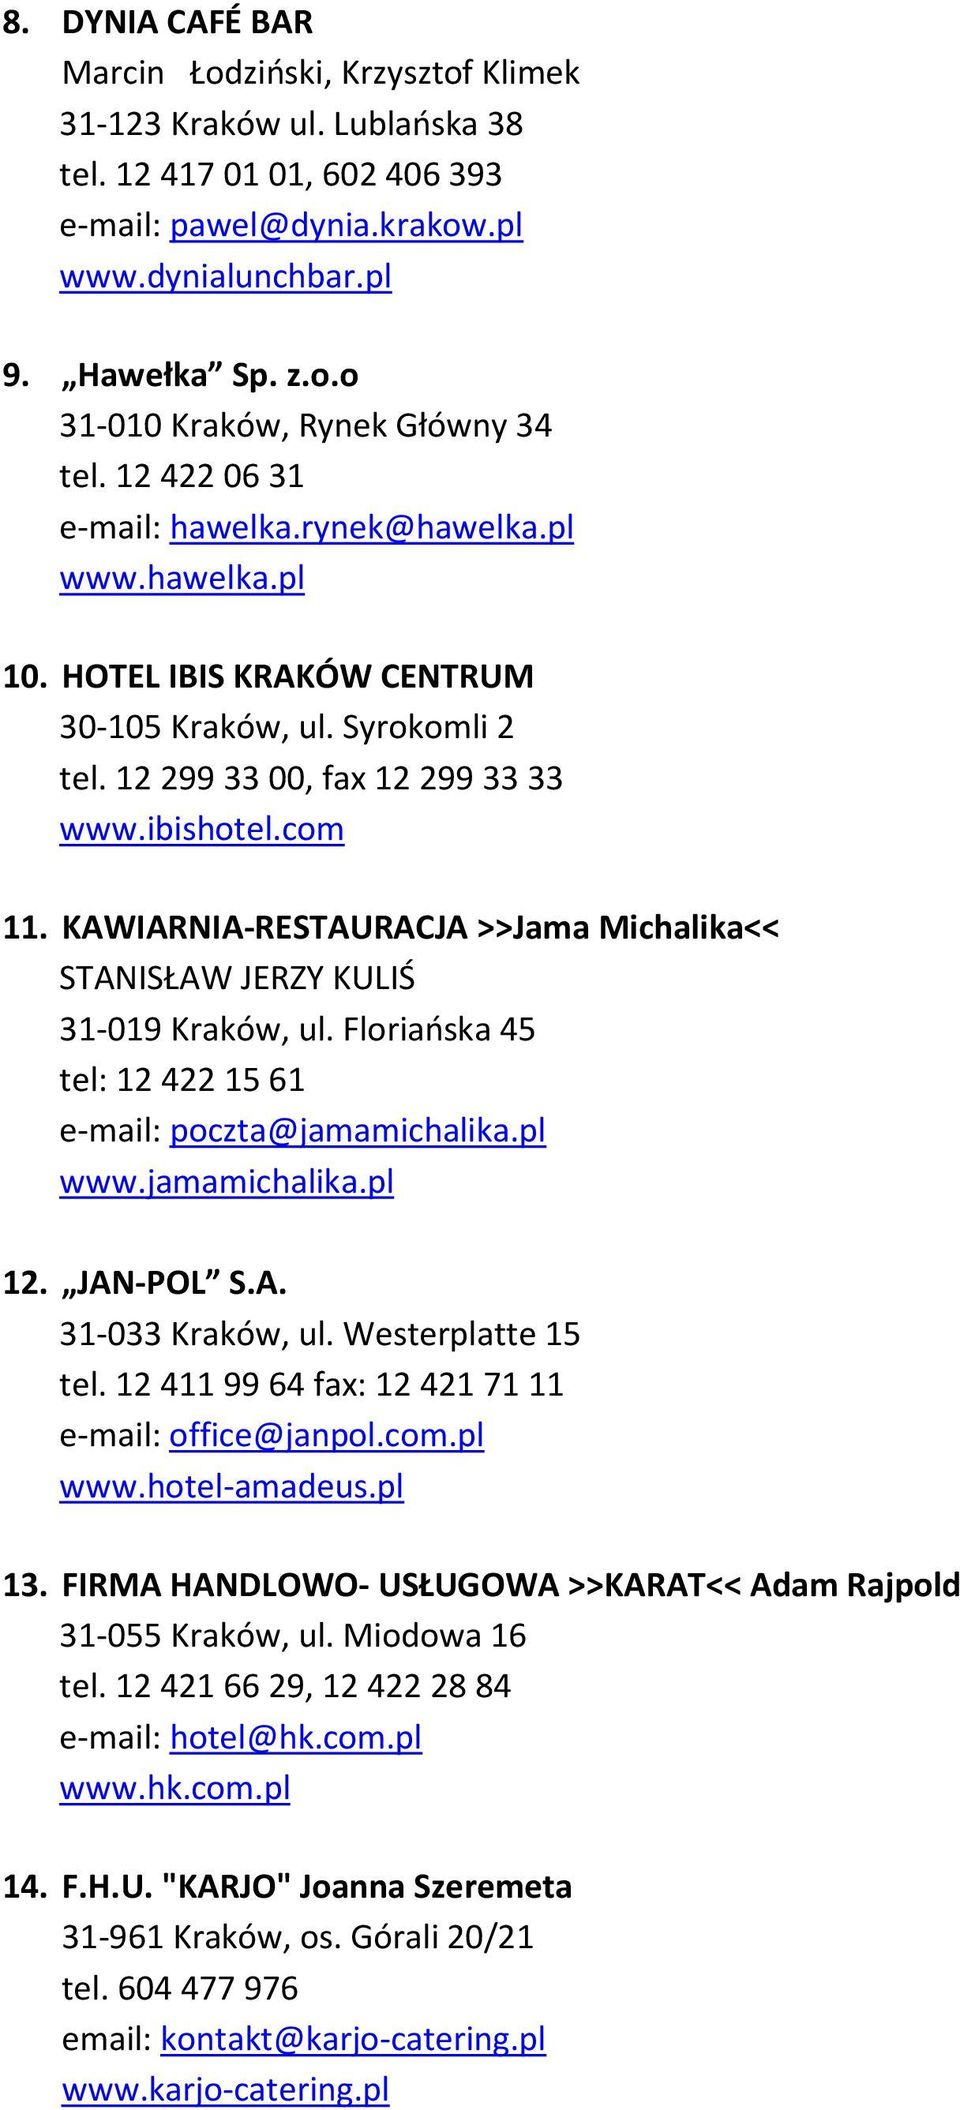 KAWIARNIA-RESTAURACJA >>Jama Michalika<< STANISŁAW JERZY KULIŚ 31-019 Kraków, ul. Floriańska 45 tel: 12 422 15 61 e-mail: poczta@jamamichalika.pl www.jamamichalika.pl 12. JAN-POL S.A. 31-033 Kraków, ul.